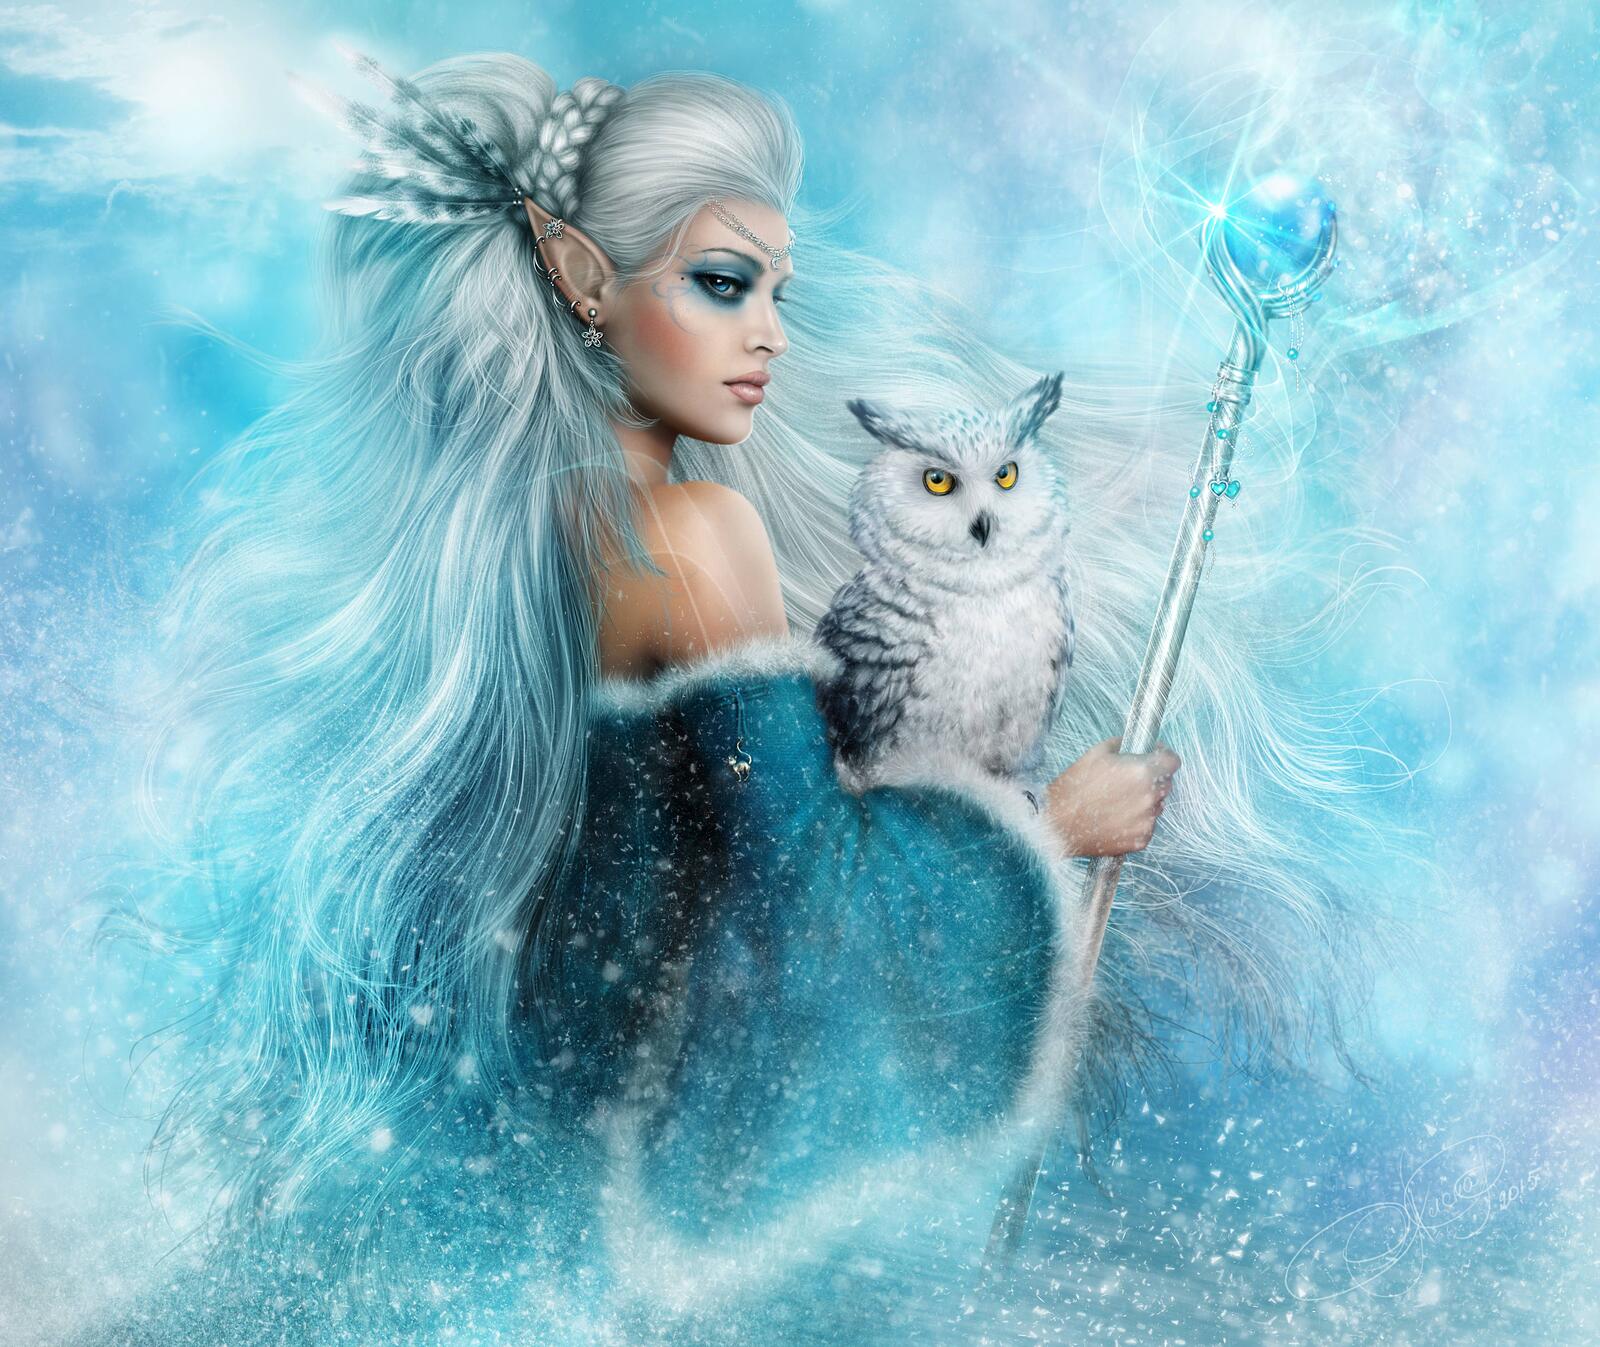 Wallpapers fantasy girl fairy owl on the desktop